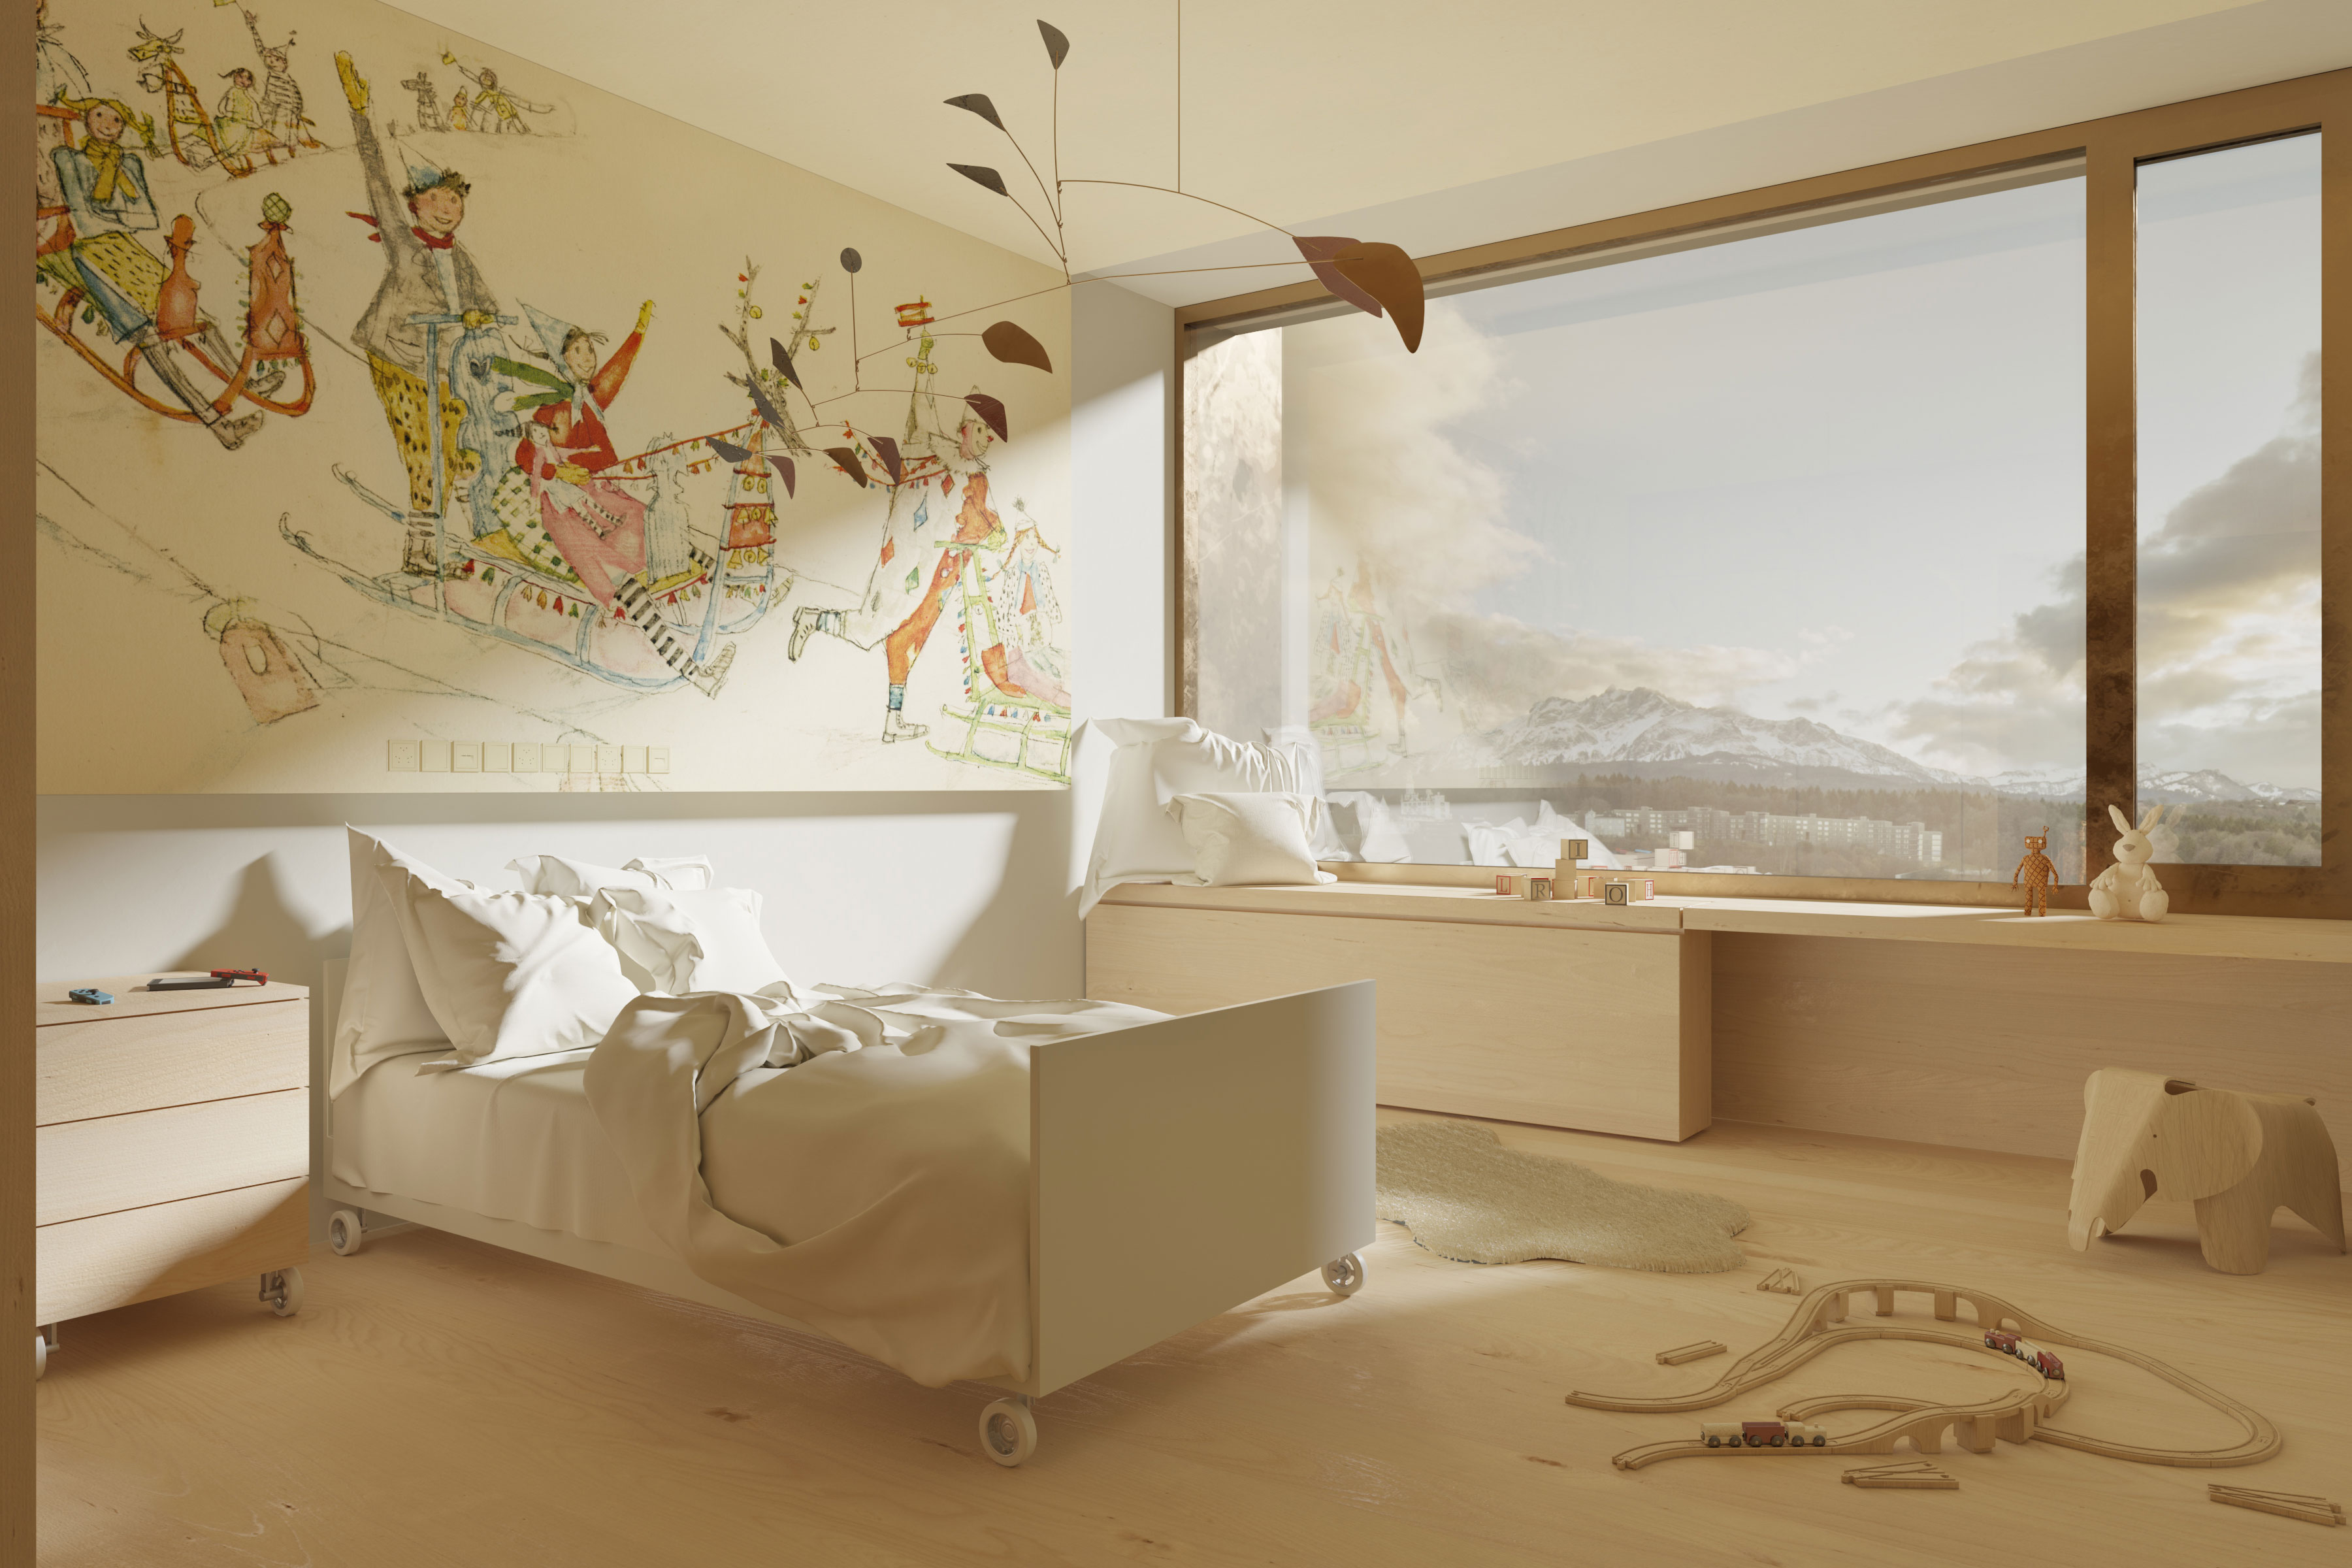 Neubau Kinderspital und Frauenklinik Kantonsspital Luzern | Wettbewerb Marques Architekten 2020 | Visualisierung Dario Lanfranconi